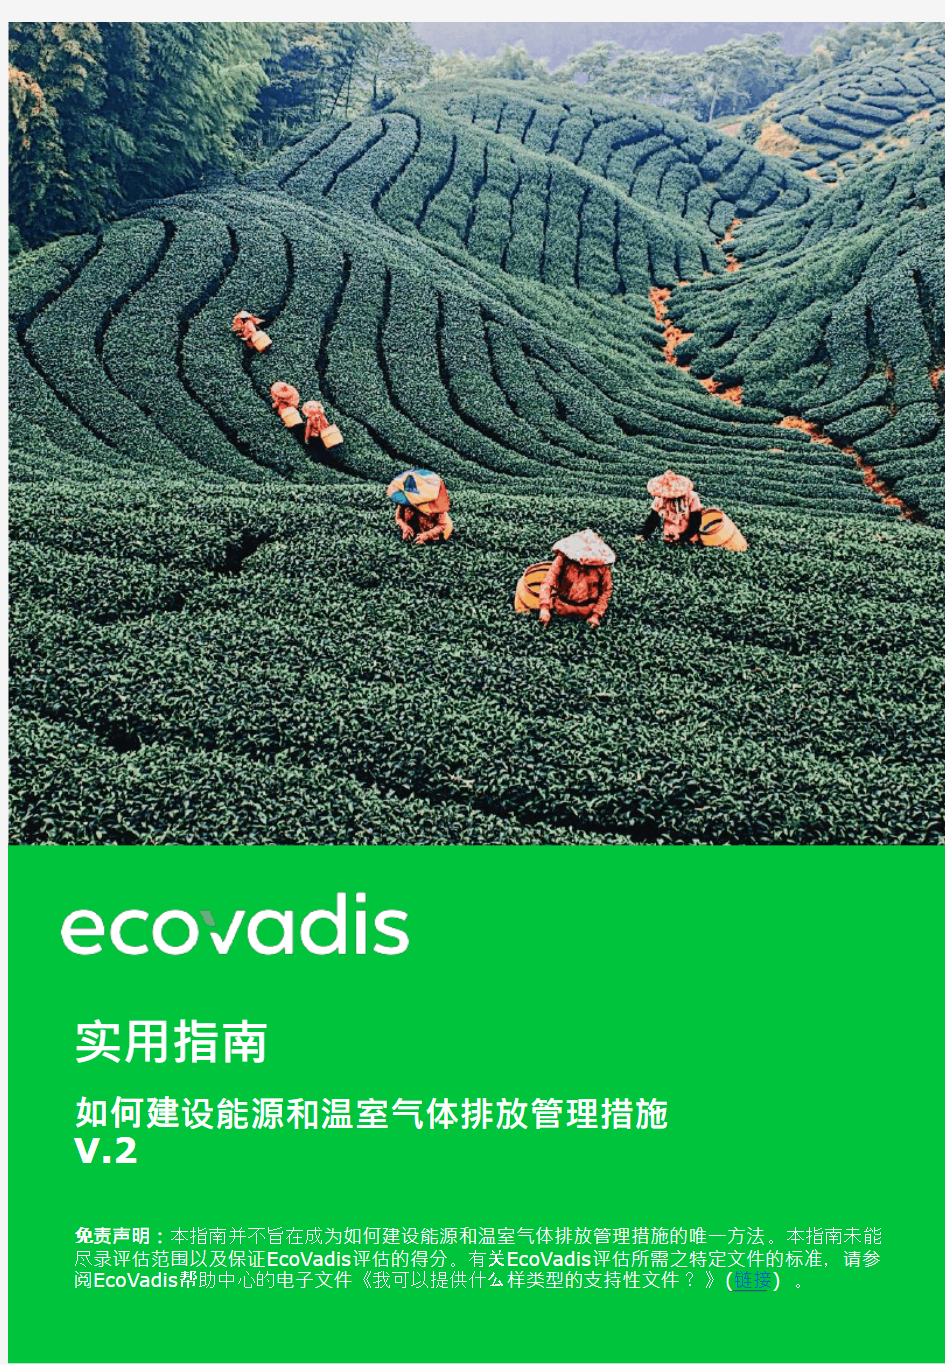 ecovadis如何建设能源和温室气体排放管理措施